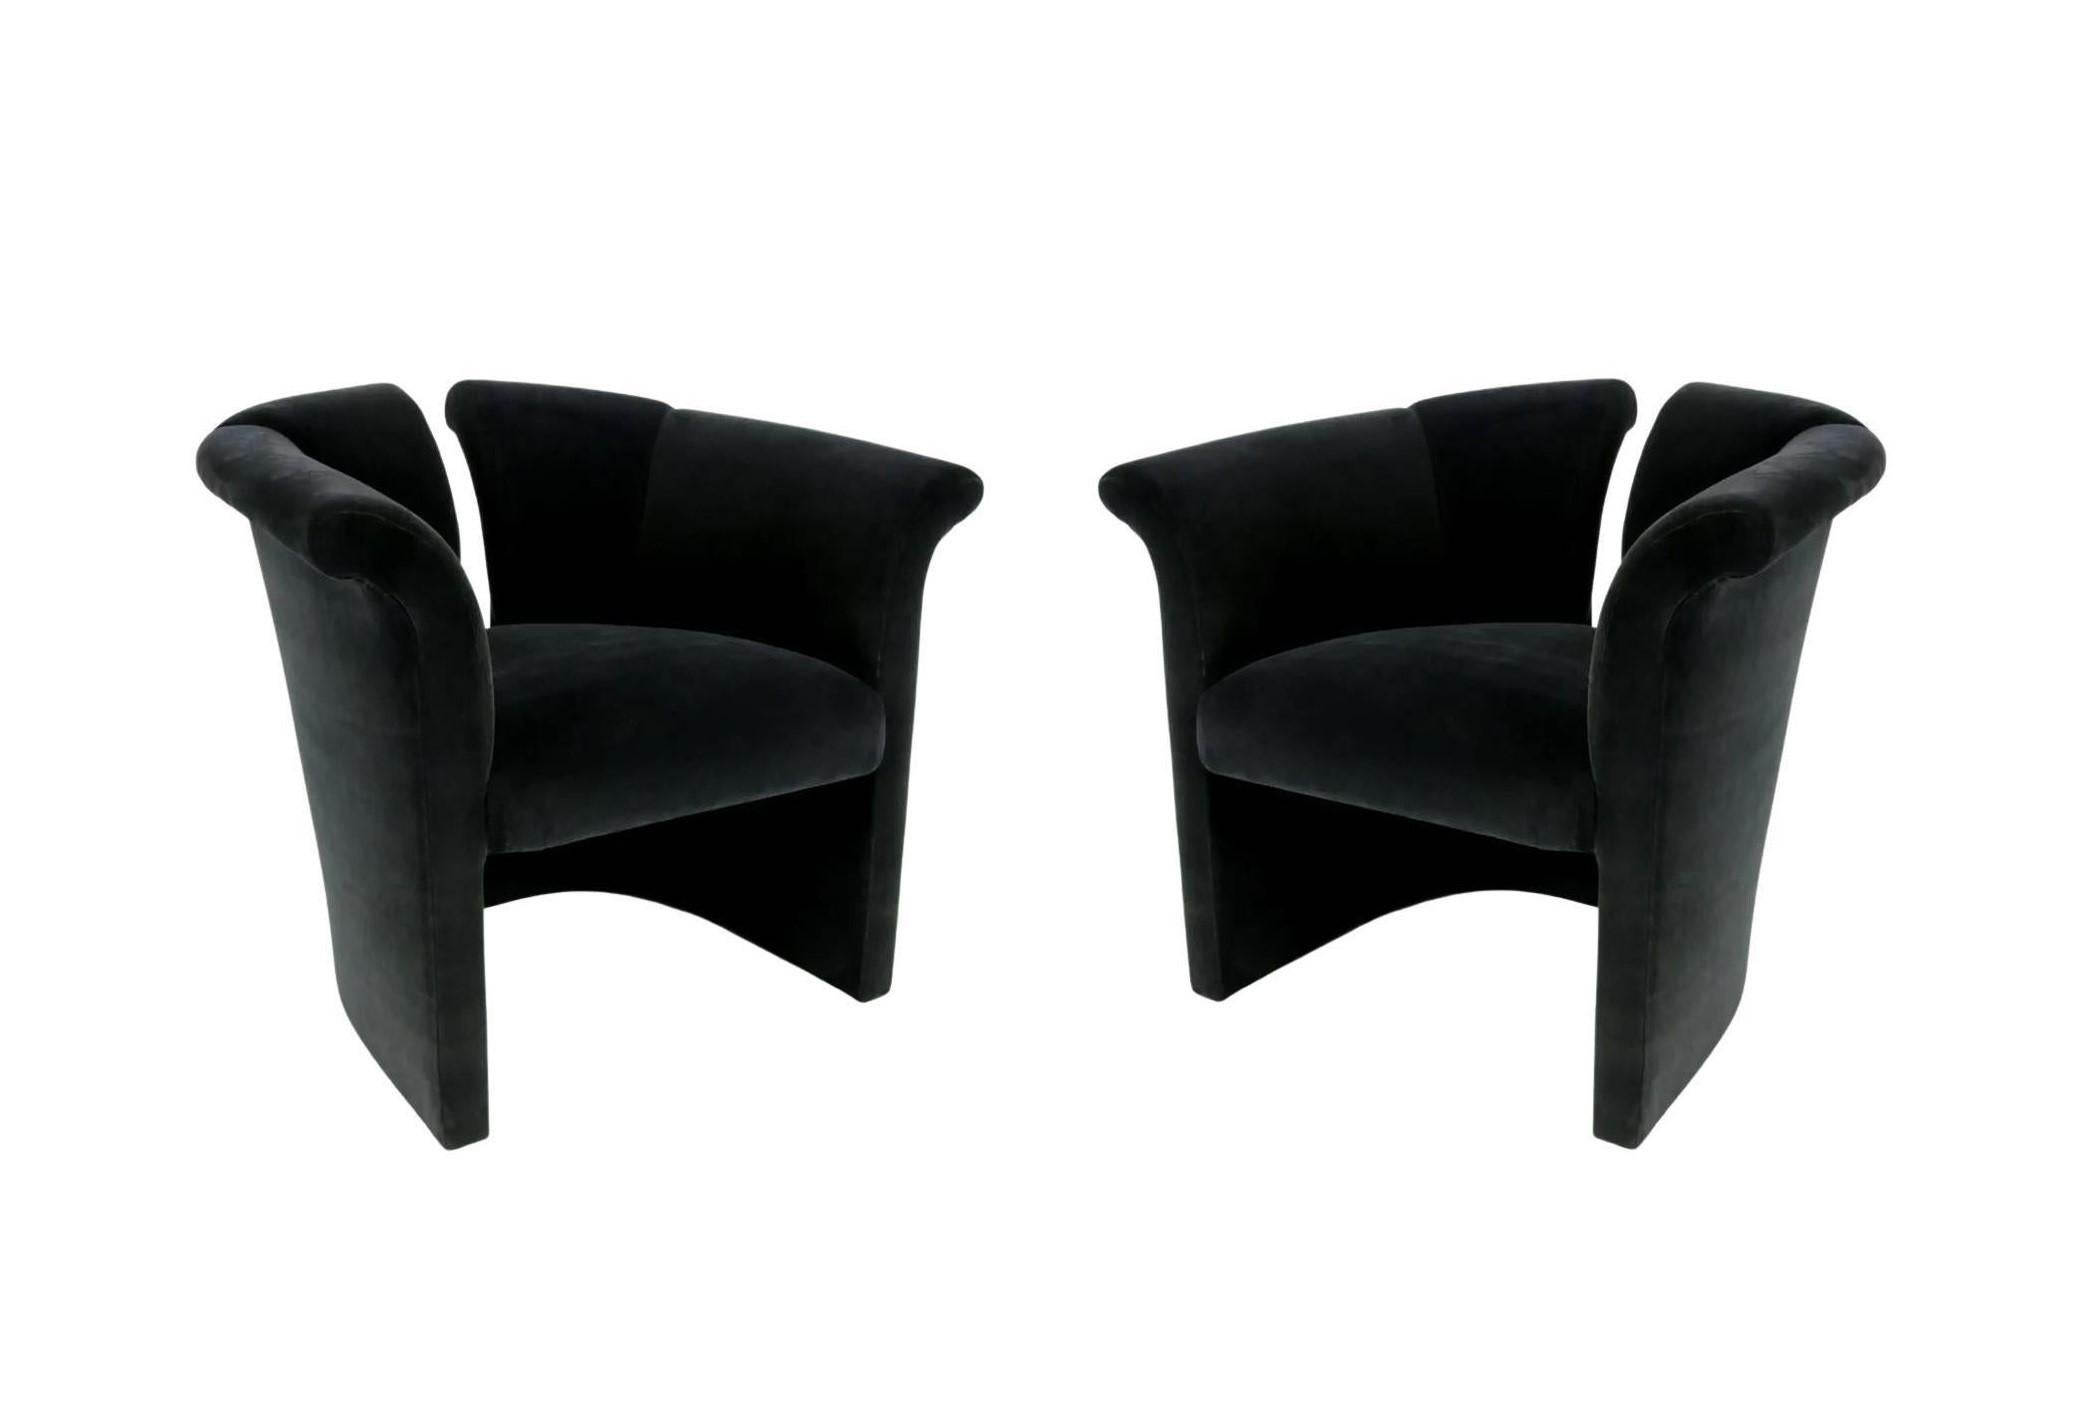 Il s'agit d'une paire unique de fauteuils d'appoint postmodernes conçus par Milo Baughman. Il a été un pionnier du design moderne et l'un des principaux concepteurs de meubles modernes de la seconde moitié du XXe siècle. Les designs typiquement